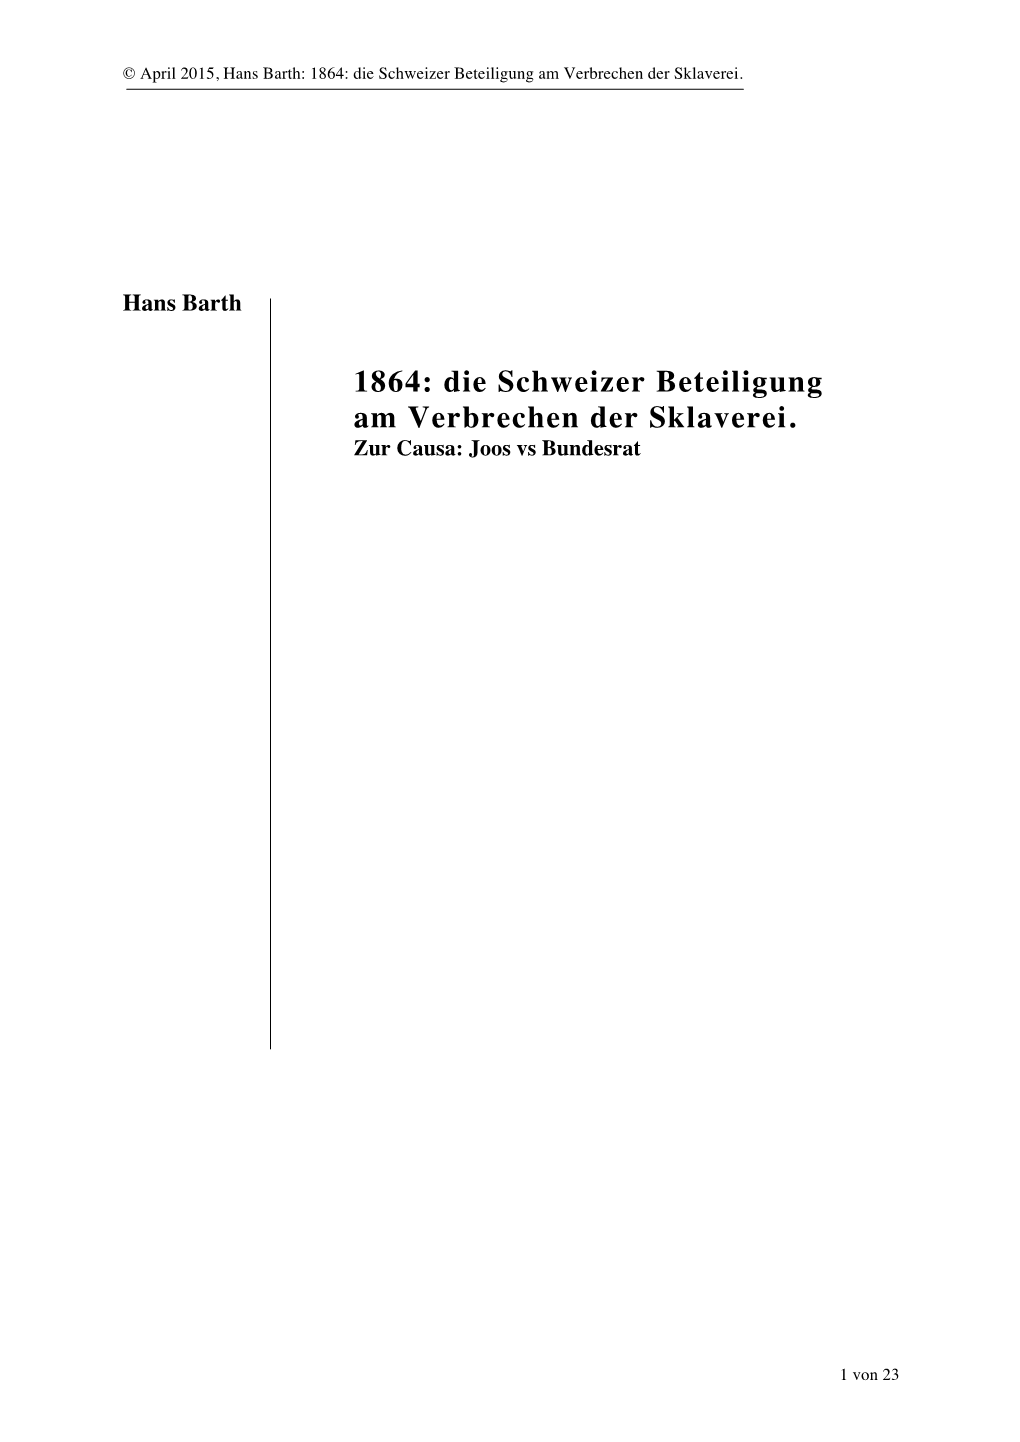 Hans Barth: 1864: Die Schweizer Beteiligung Am Verbrechen Der Sklaverei